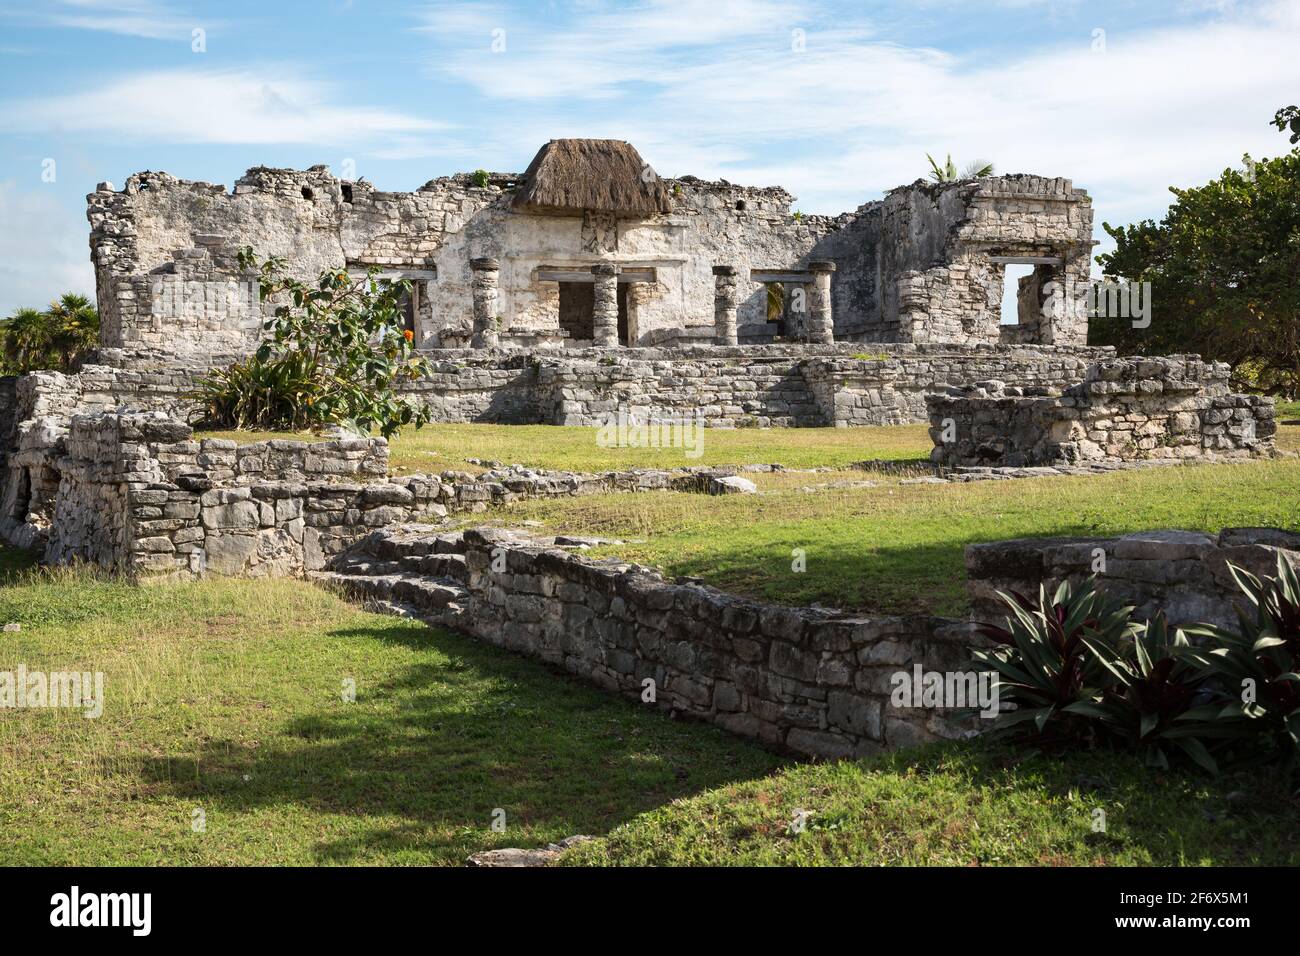 Maya-Tempelruinen mit einem Strohdach über einem herabsteigenden gottesfresko in Tulum, Quintana Roo, Halbinsel Yucatan, Mexiko Stockfoto